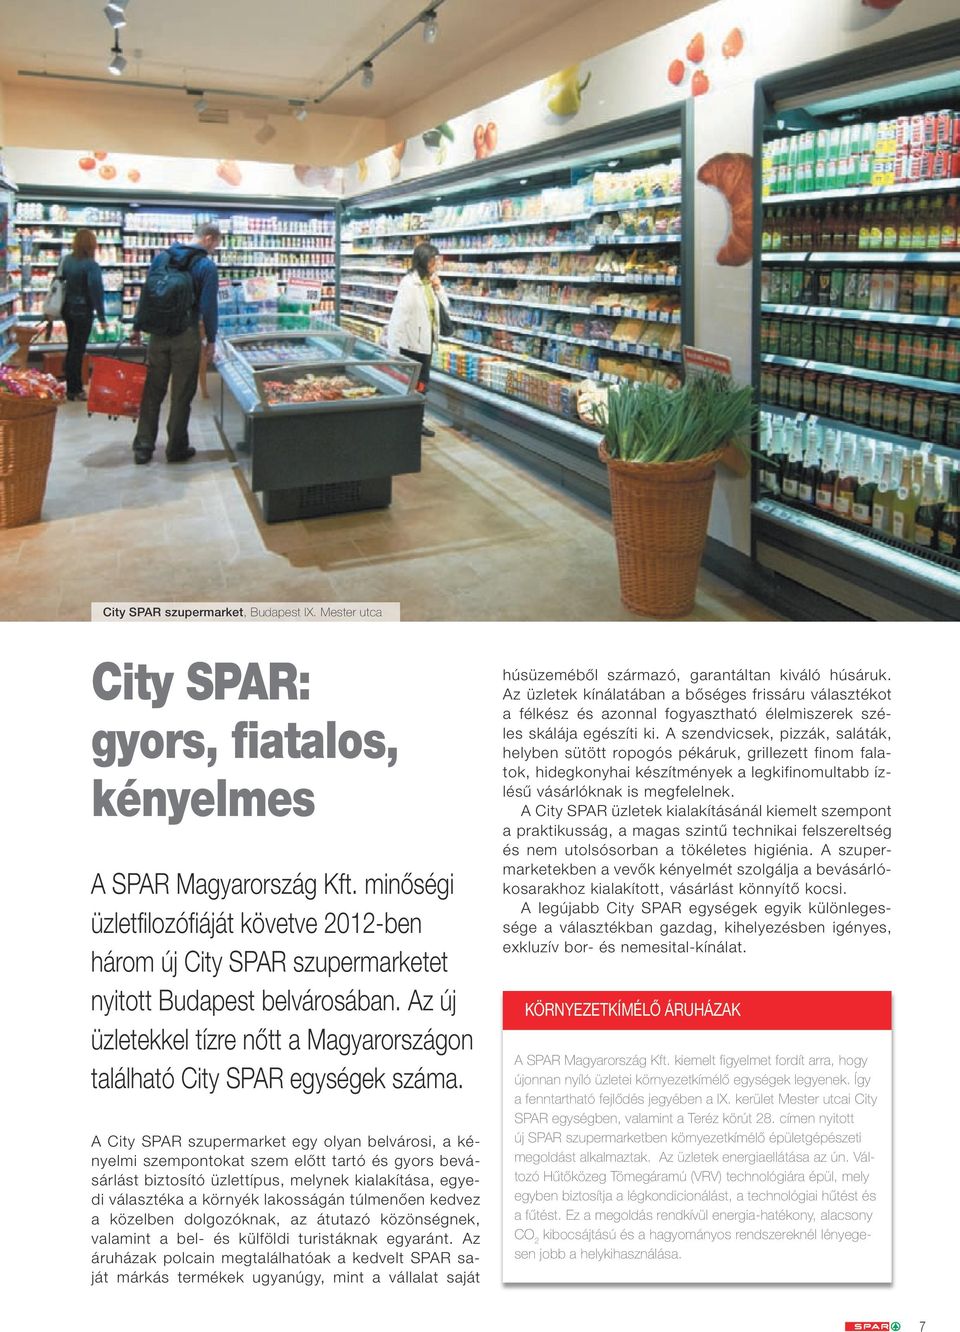 A City SPAR szupermarket egy olyan belvárosi, a kényelmi szempontokat szem előtt tartó és gyors bevásárlást biztosító üzlettípus, melynek kialakítása, egyedi választéka a környék lakosságán túlmenően